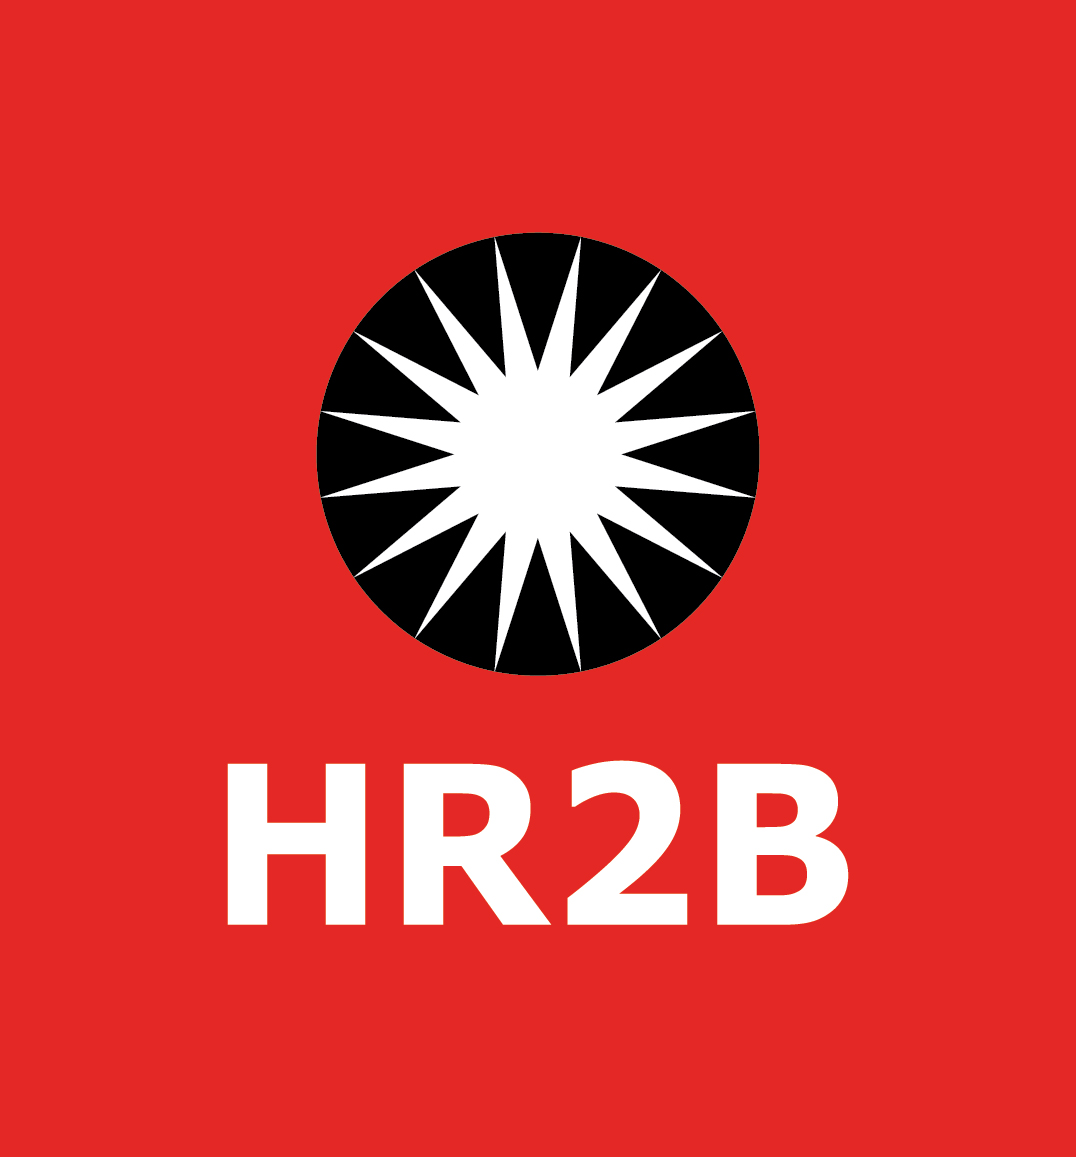 HR2B